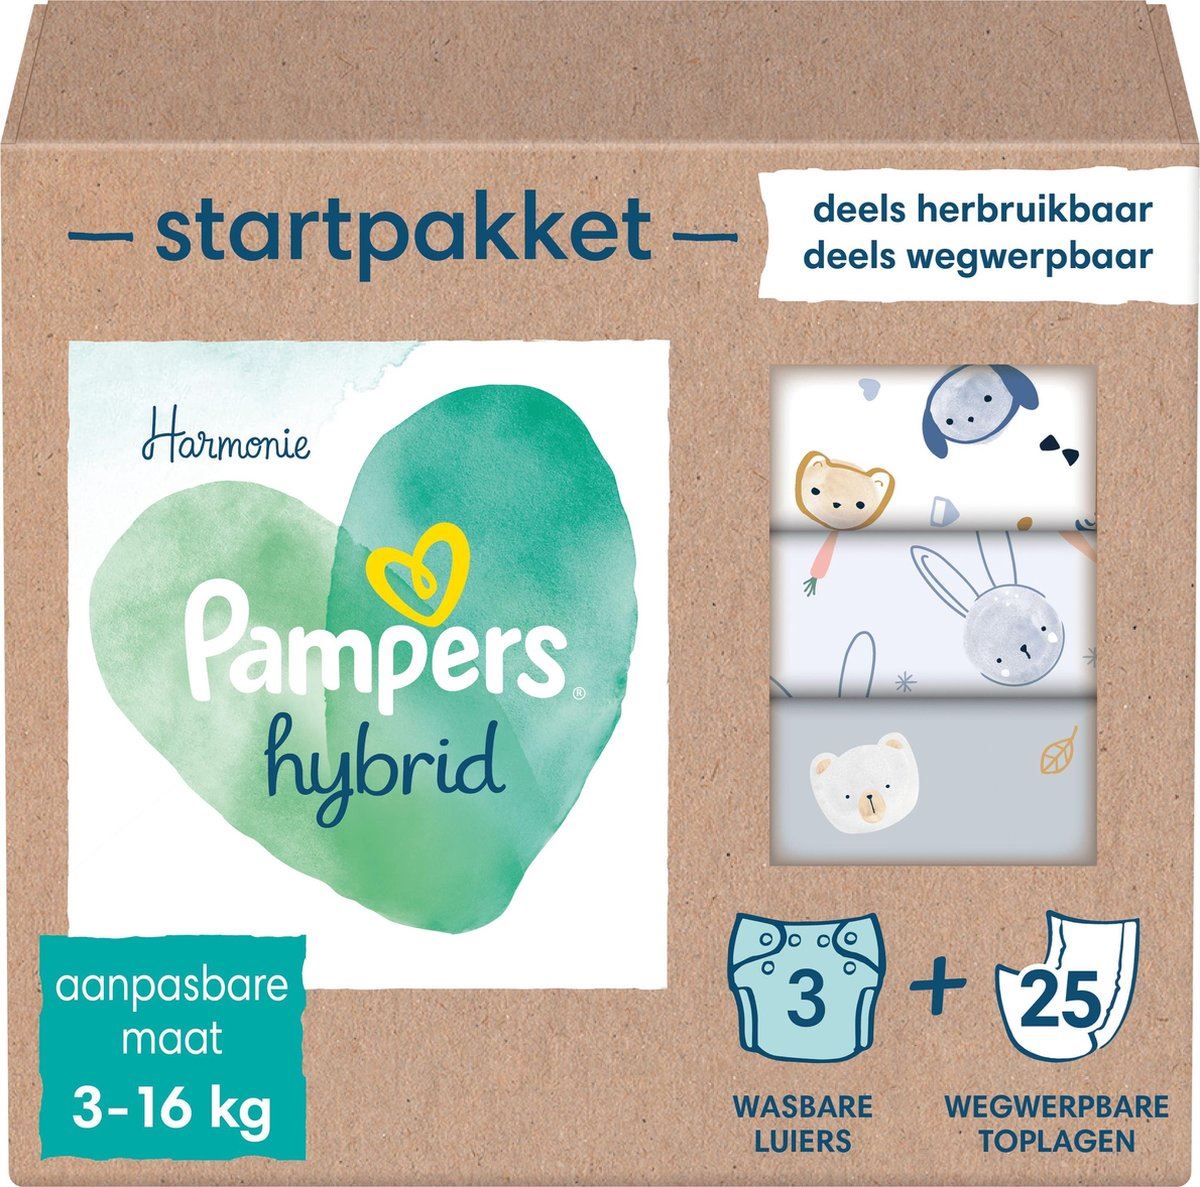 Pampers-Harmonie-Hybrid-Startpakket-Wasbare-Luiers-Voor-Baby-s